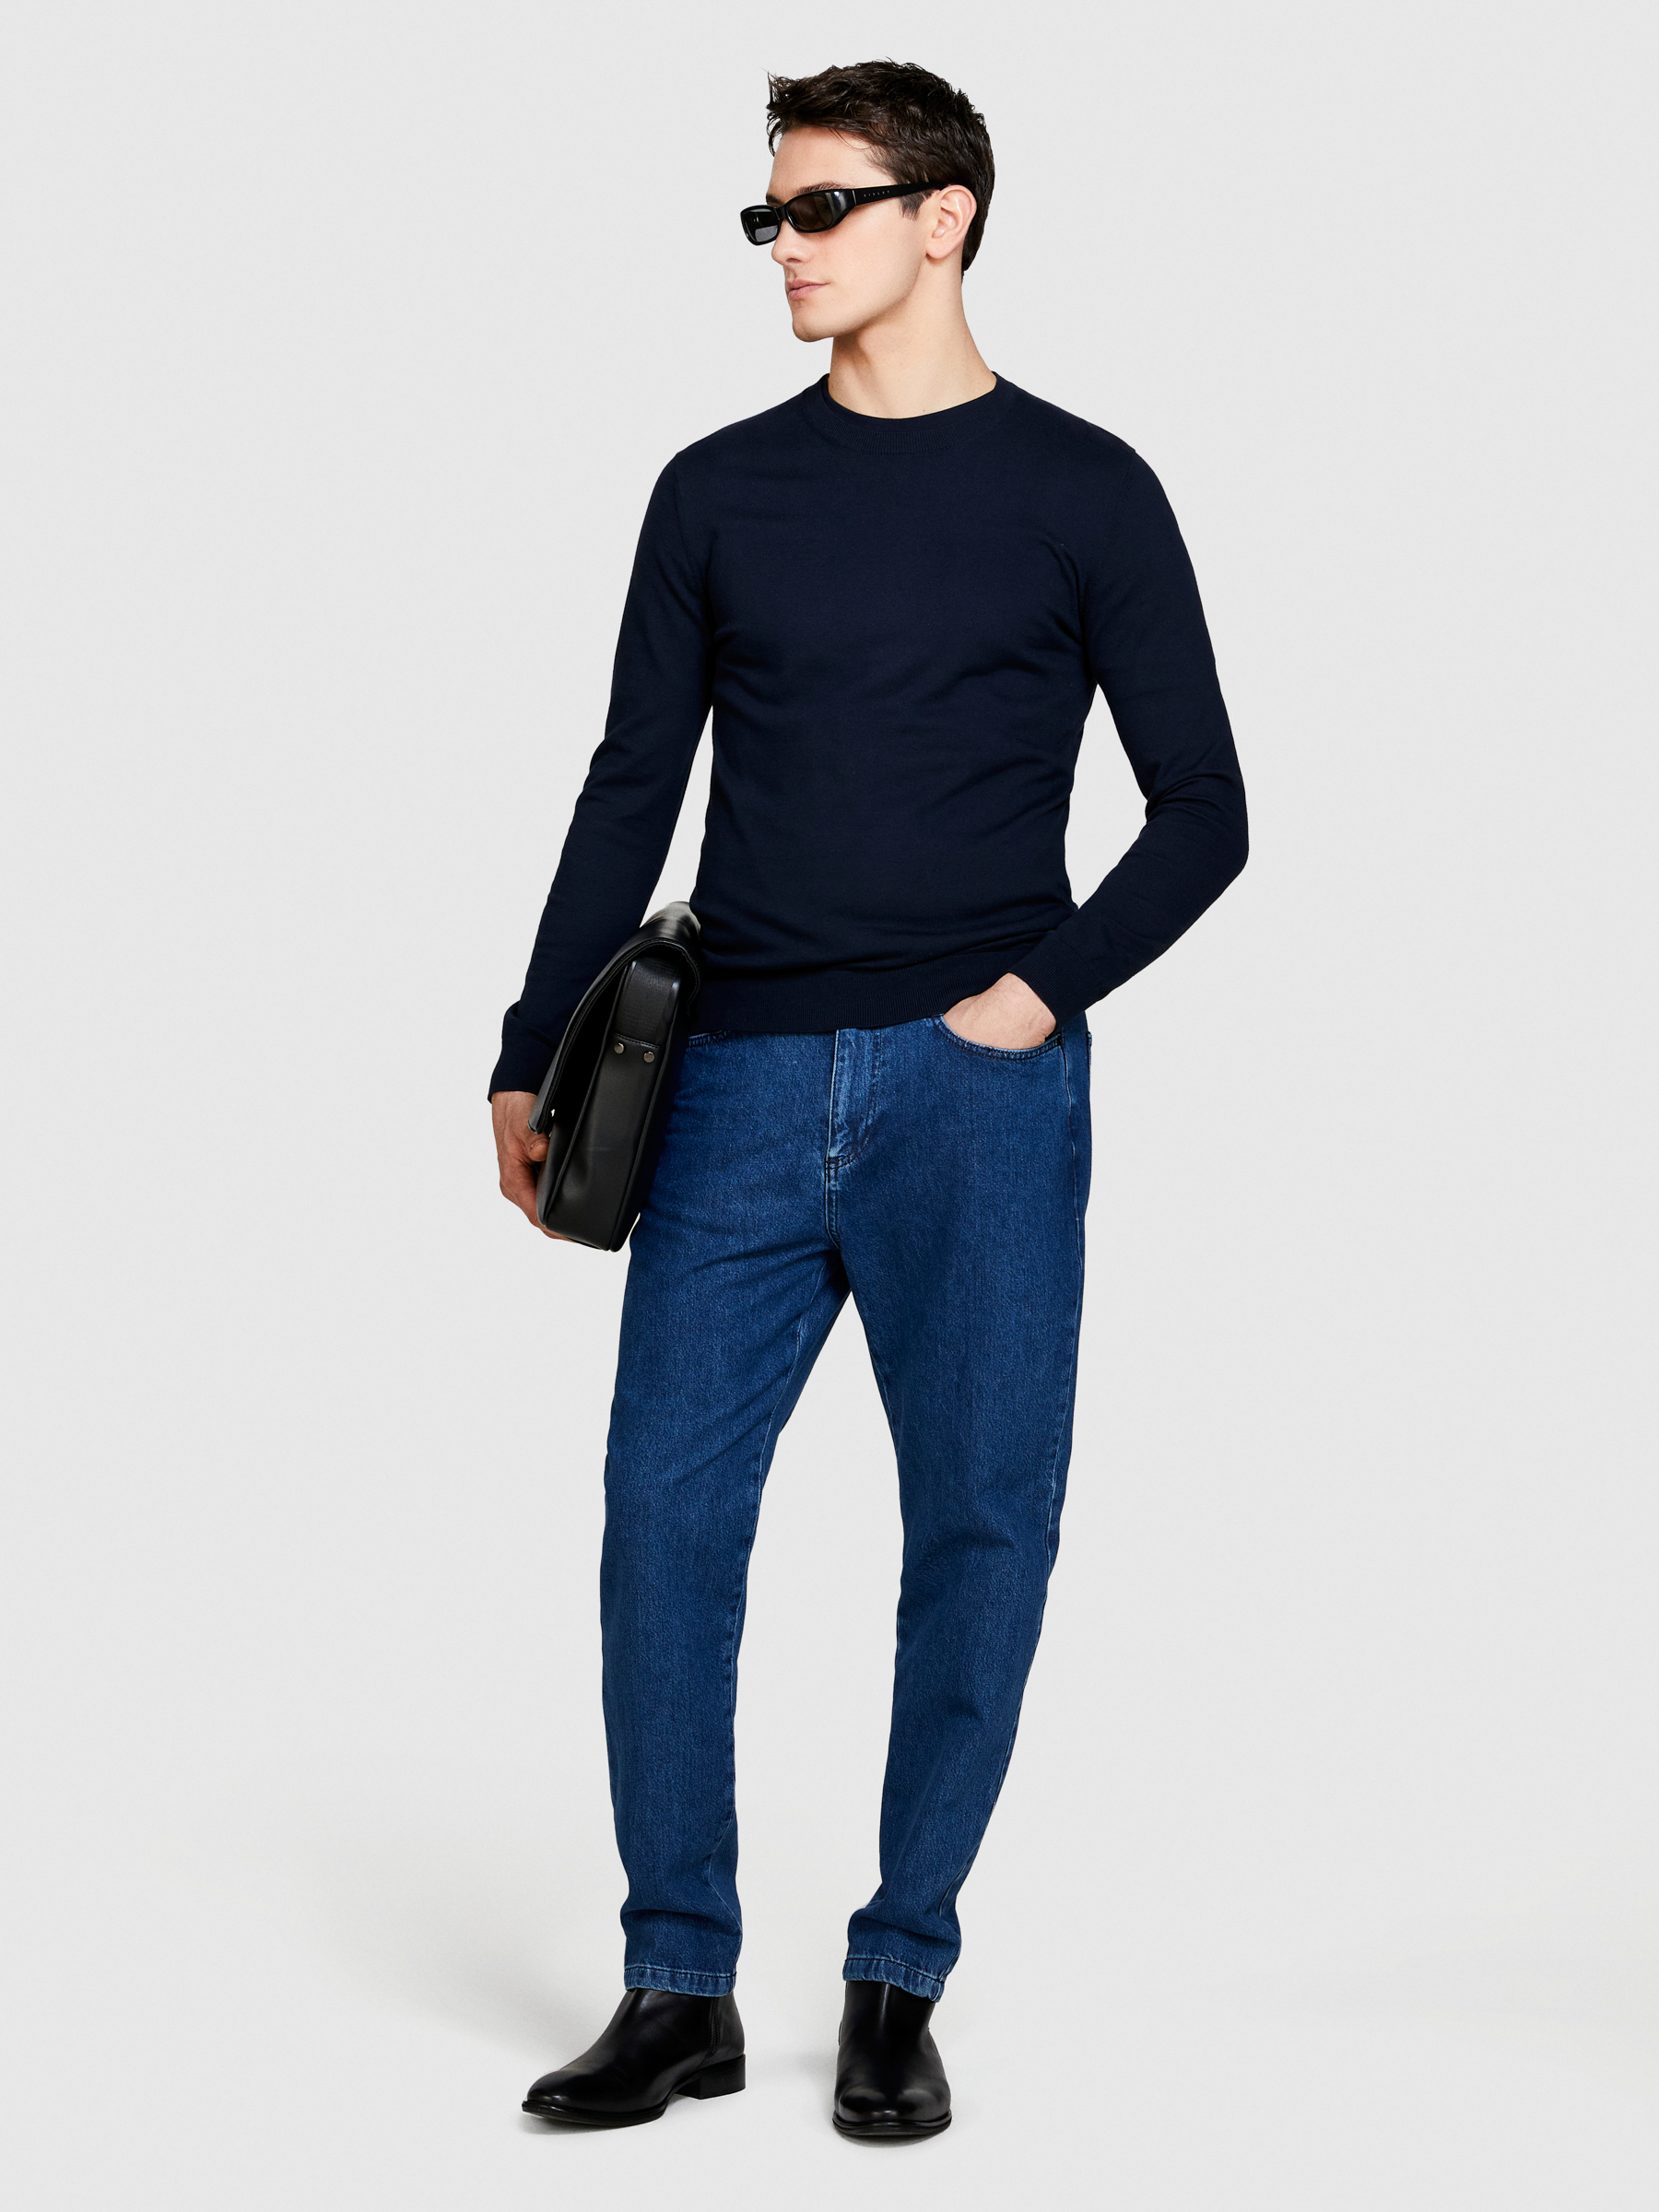 Sisley - Slim Fit Sweater, Man, Dark Blue, Size: L